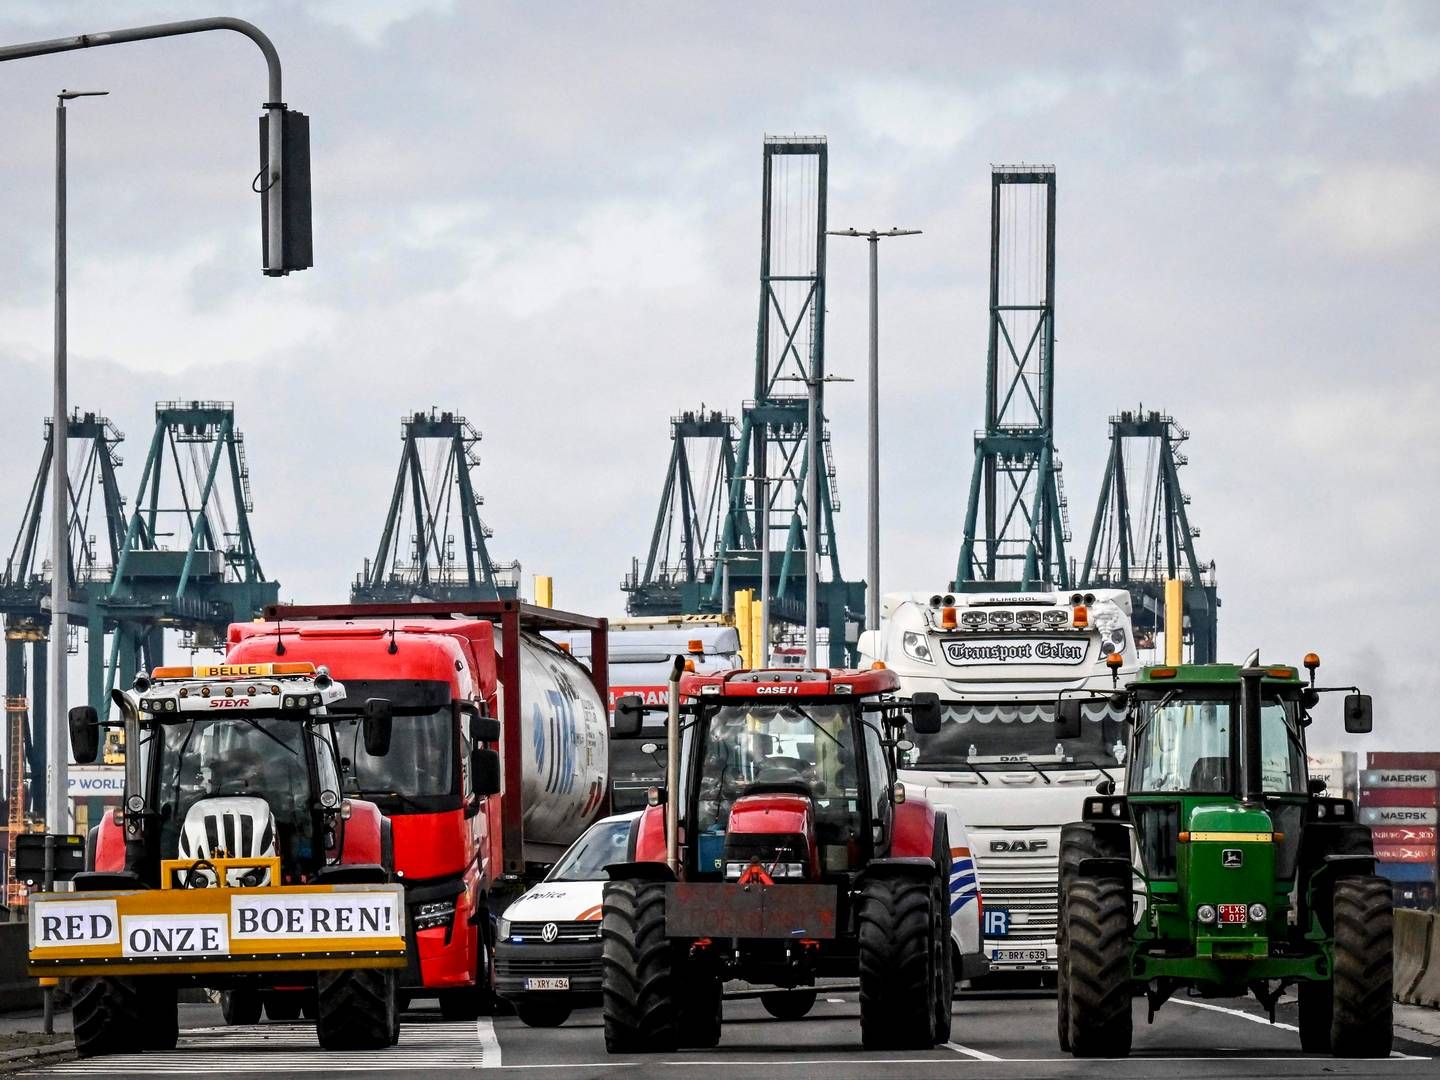 Ifølge Alfaport Voka koster blokaden millioner af euro for de virksomheder, der arbejder i havnen. | Foto: Dirk Waem/AFP/Ritzau Scanpix